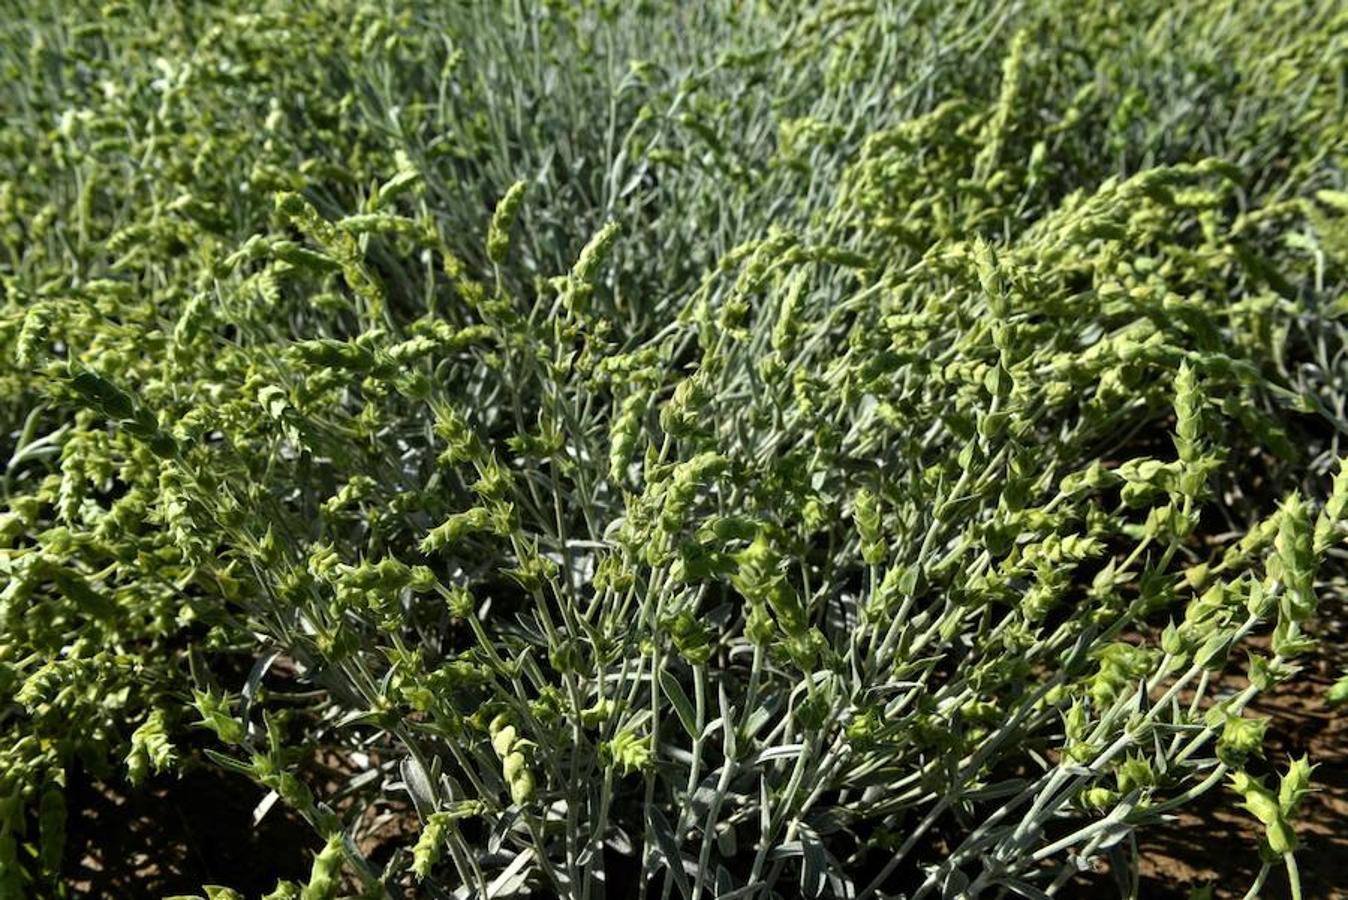 En los últimos meses, recolectores de hierbas de la vecina Albania han descendido a los prados de las montañas de Grecia, haciéndose ilegalmente con grandes cantidades de hierbas aromáticas. La variedad más preciada que buscan los incursores es la primula veris, más comúnmente conocida como prímula.